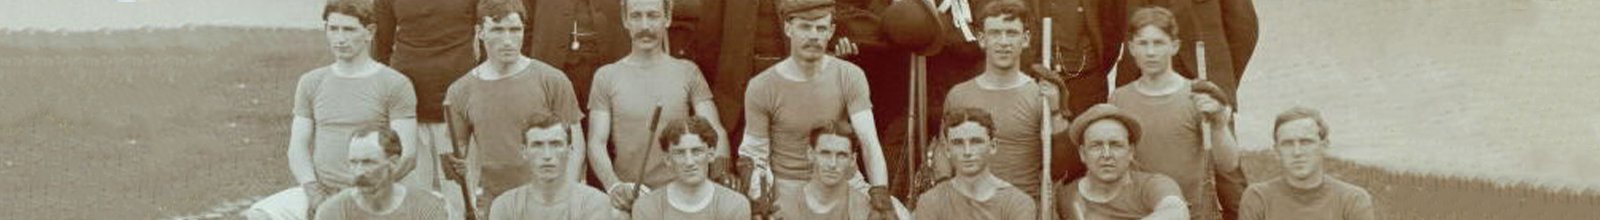 Bradford's Lacrosse Team in 1905